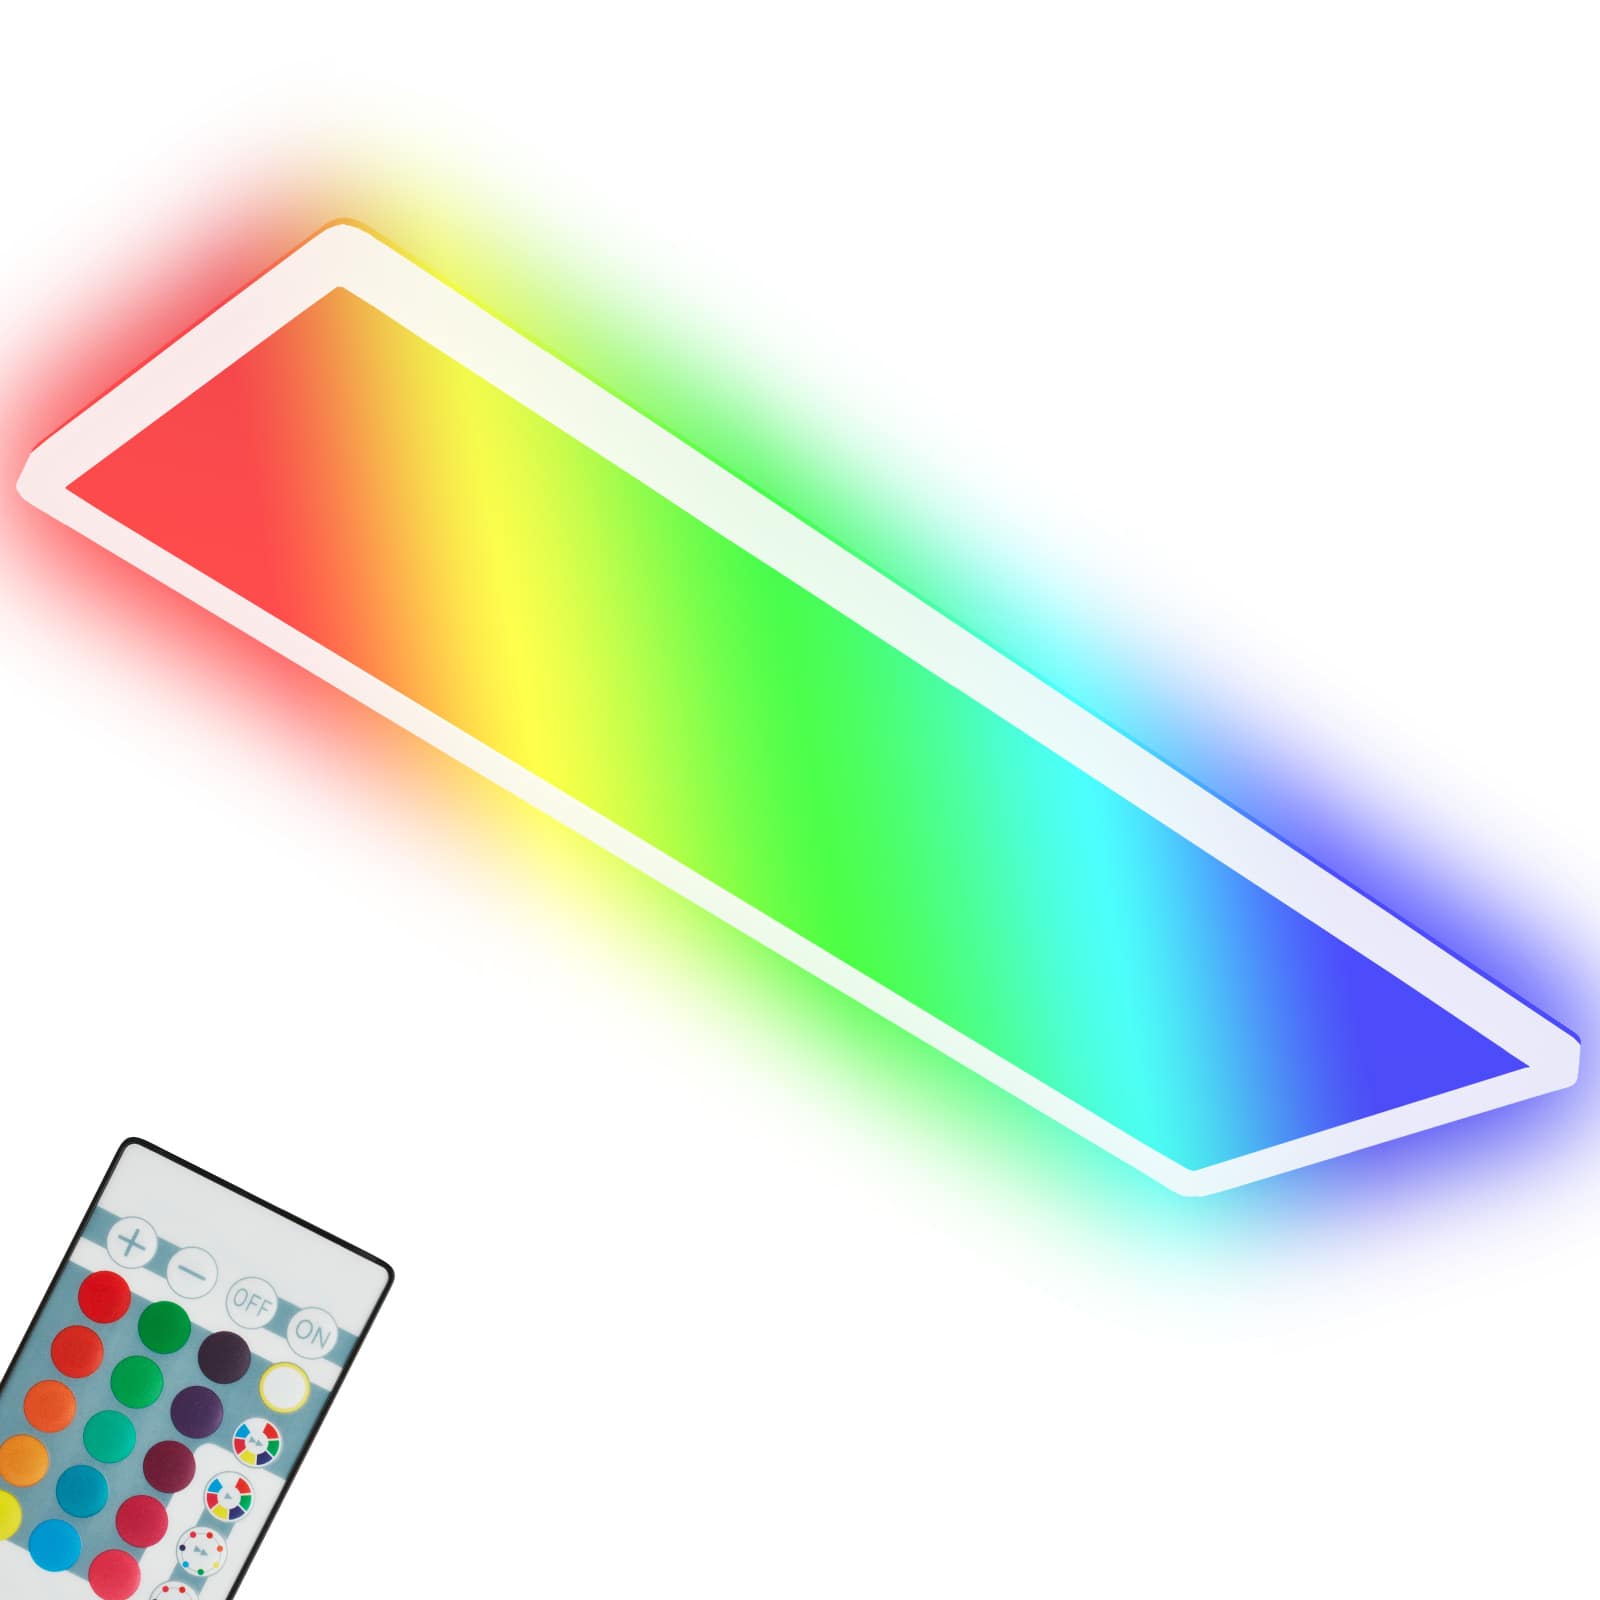 Ultraflaches RGB/W-LED Panel mit Backlight, 42 cm, LED, 22 W, 3000 lm, weiß